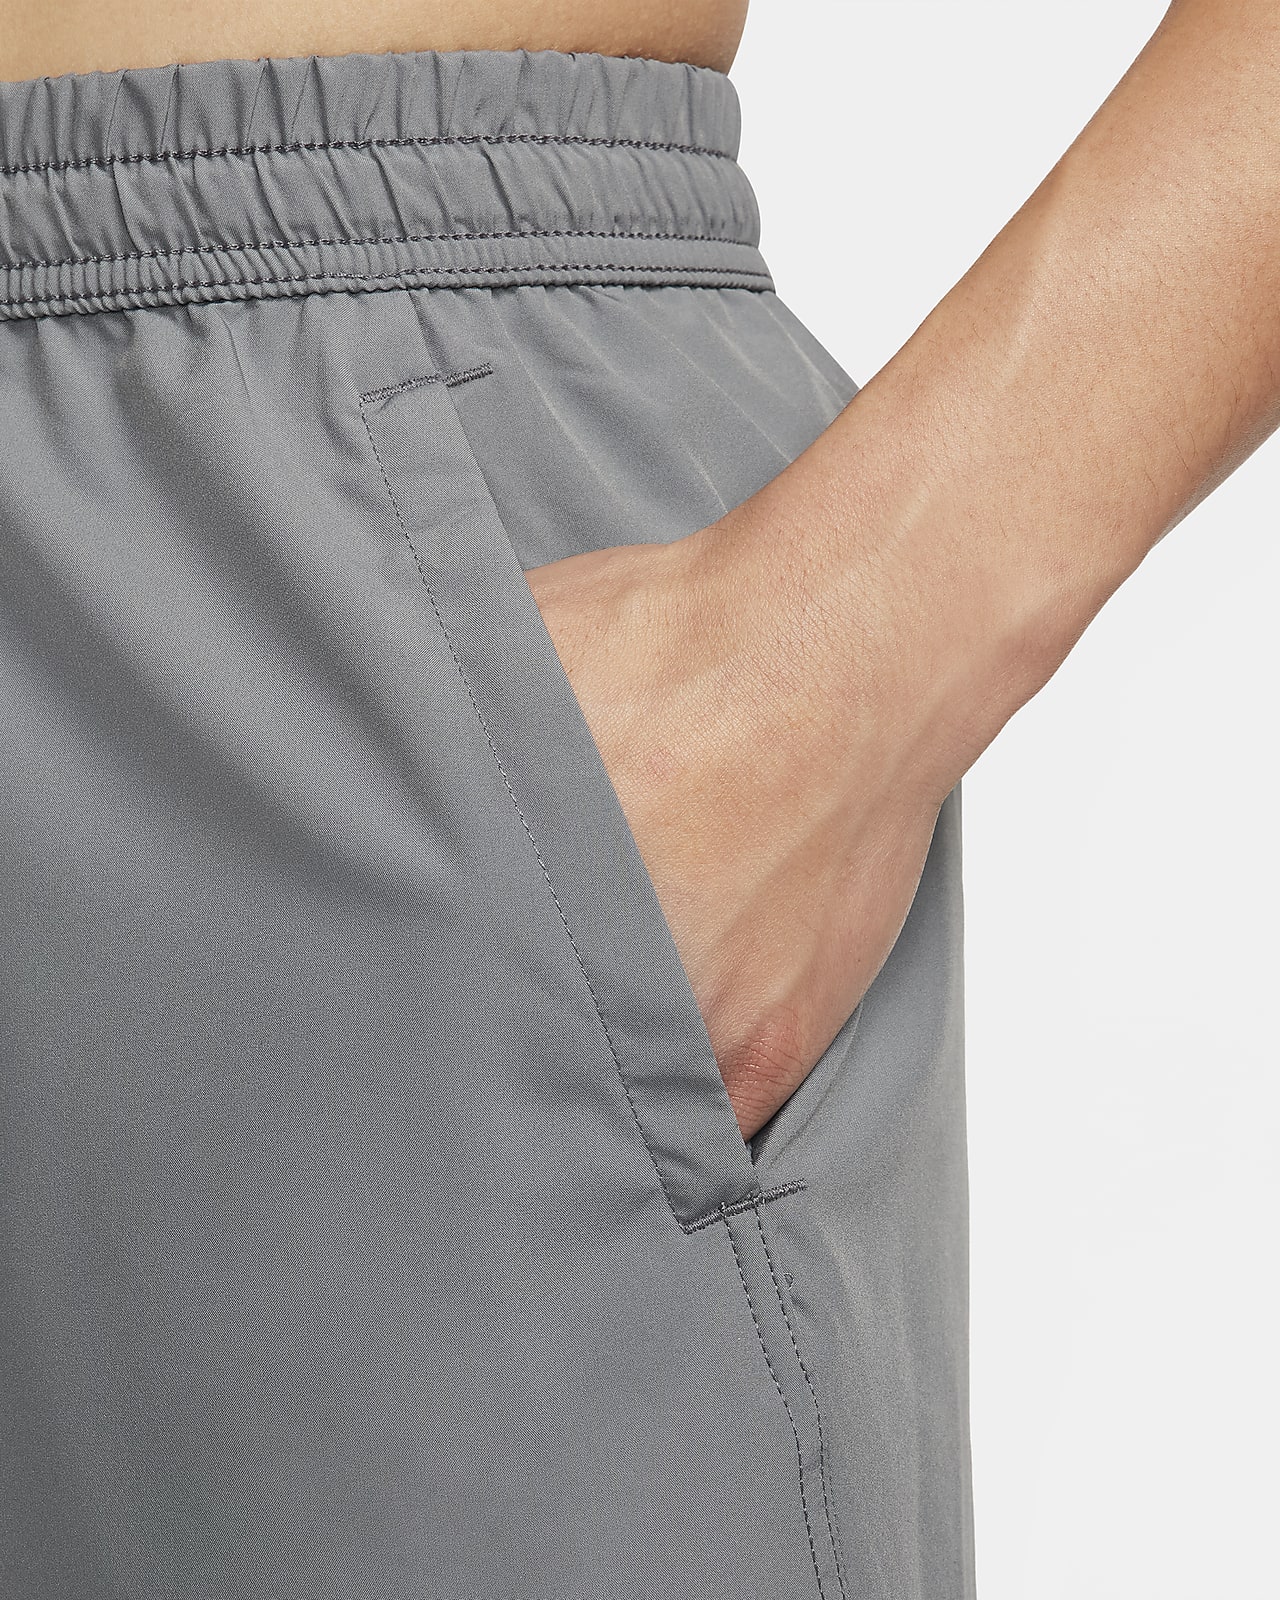 ナイキ Dri-FIT フォーム メンズ 18cm アンラインド バーサタイル ショートパンツ